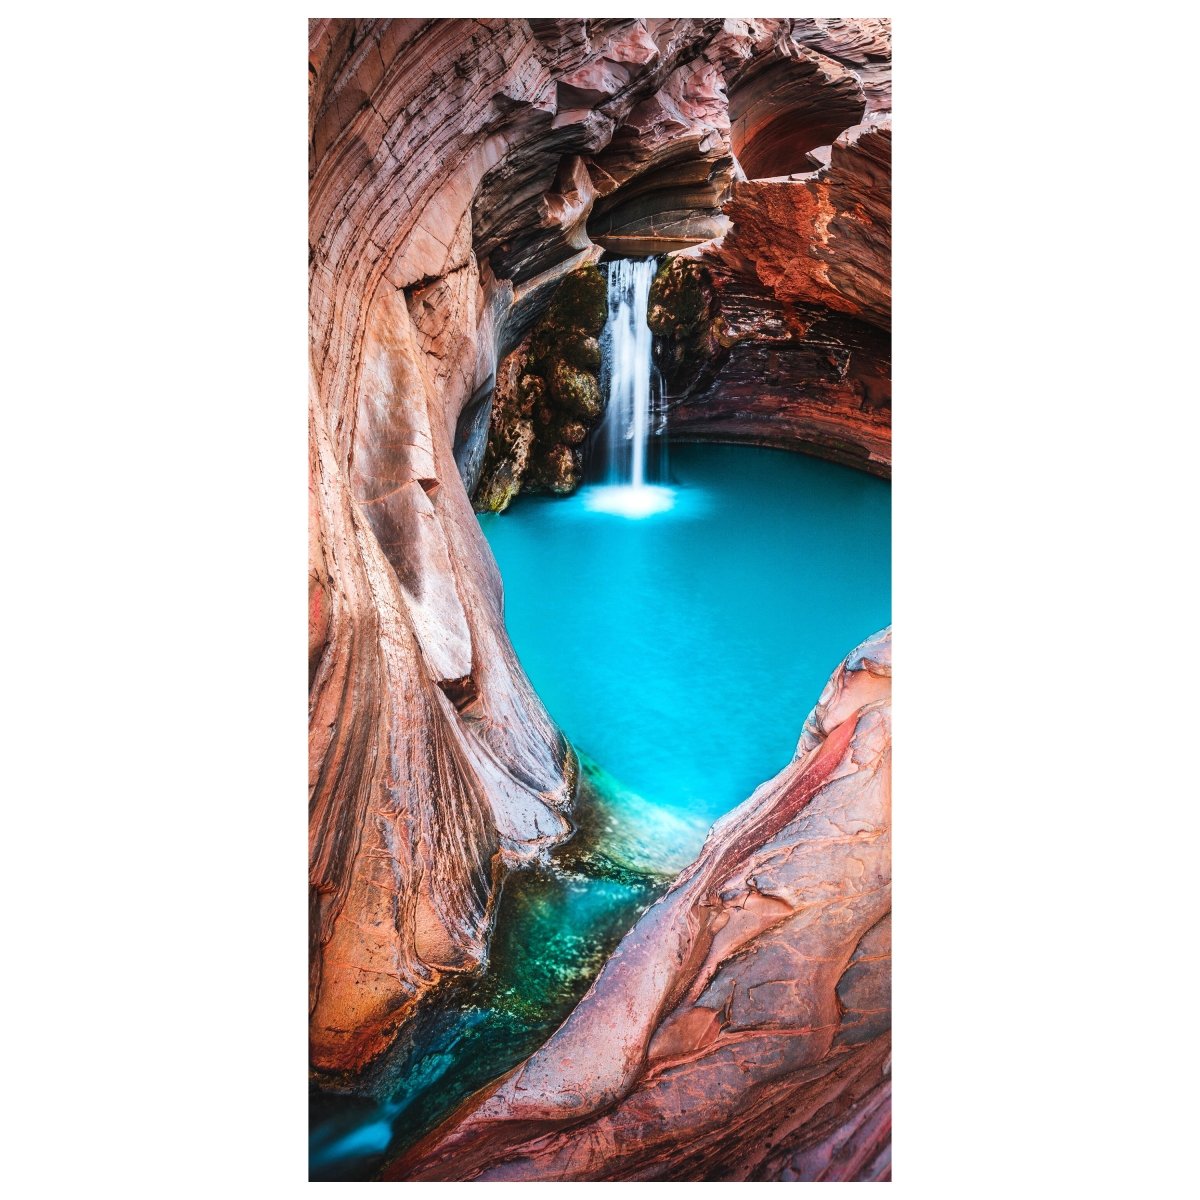 Türtapete Wasserfall in Höhle, Felsen, Wasser M1305 - Bild 2